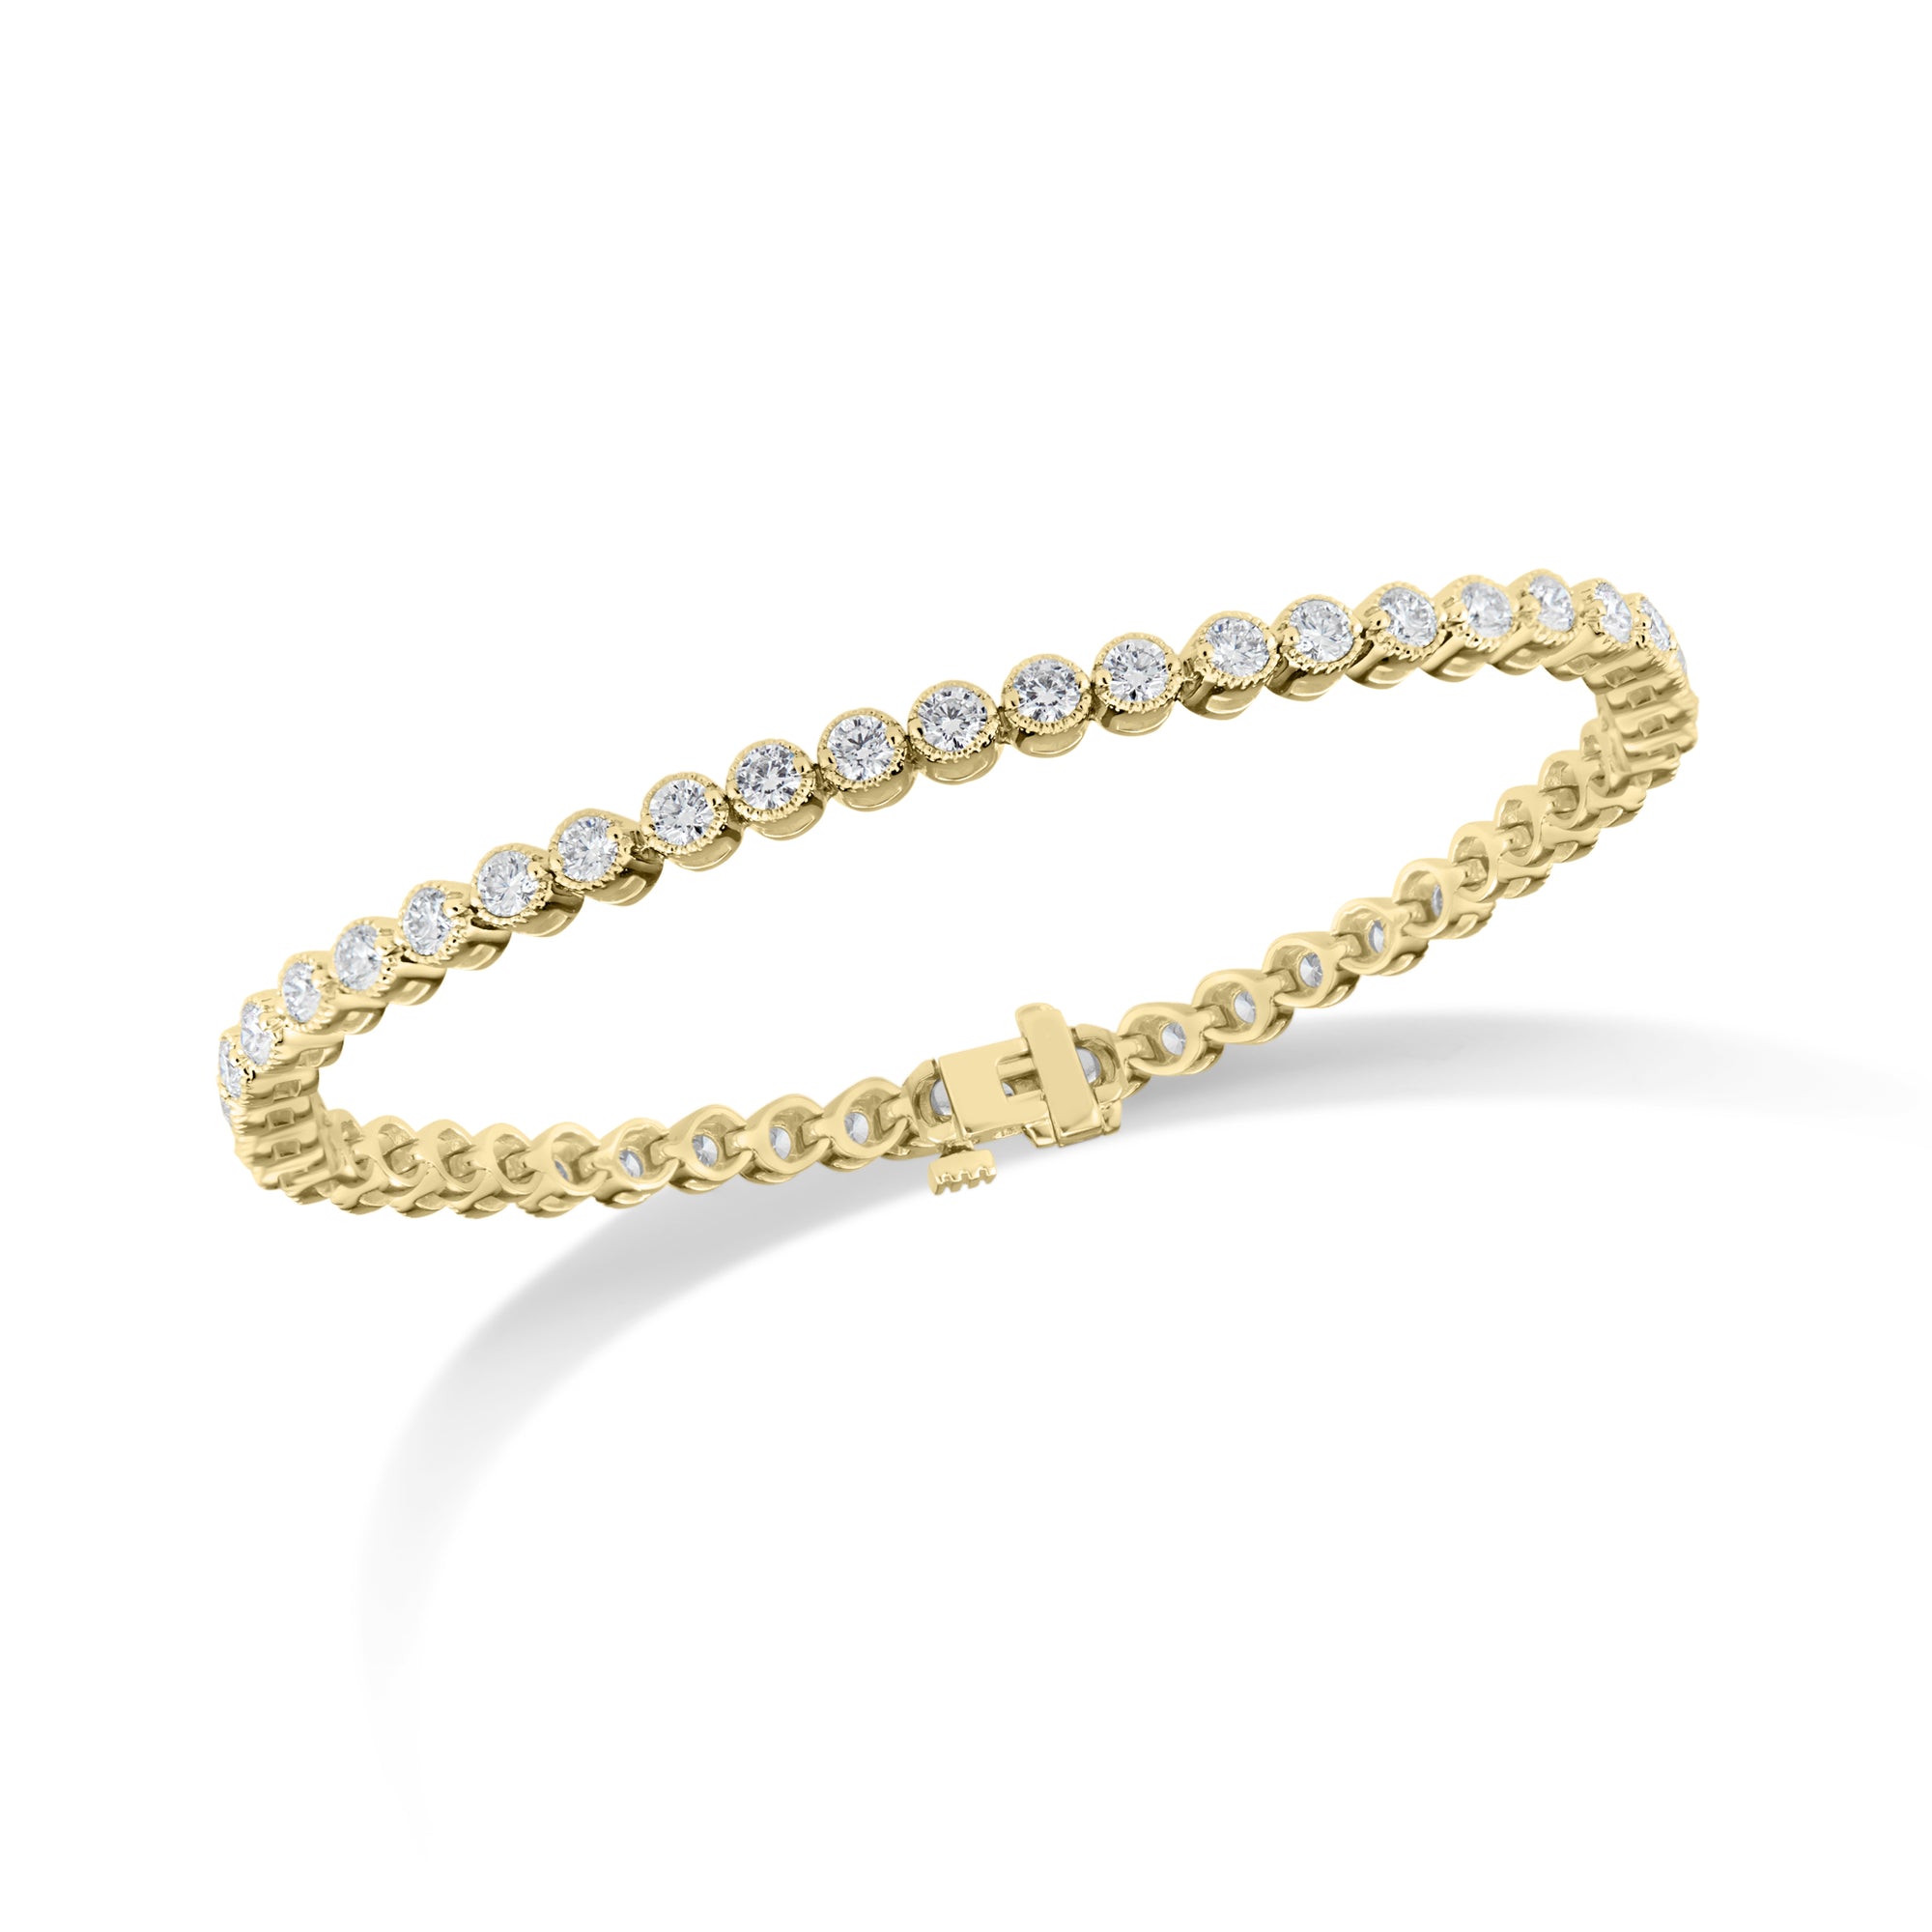 3.65 ct Diamond Tennis Bracelet  - 14K gold weighing 11.70 grams  - 47 round diamonds totaling 3.65 carats